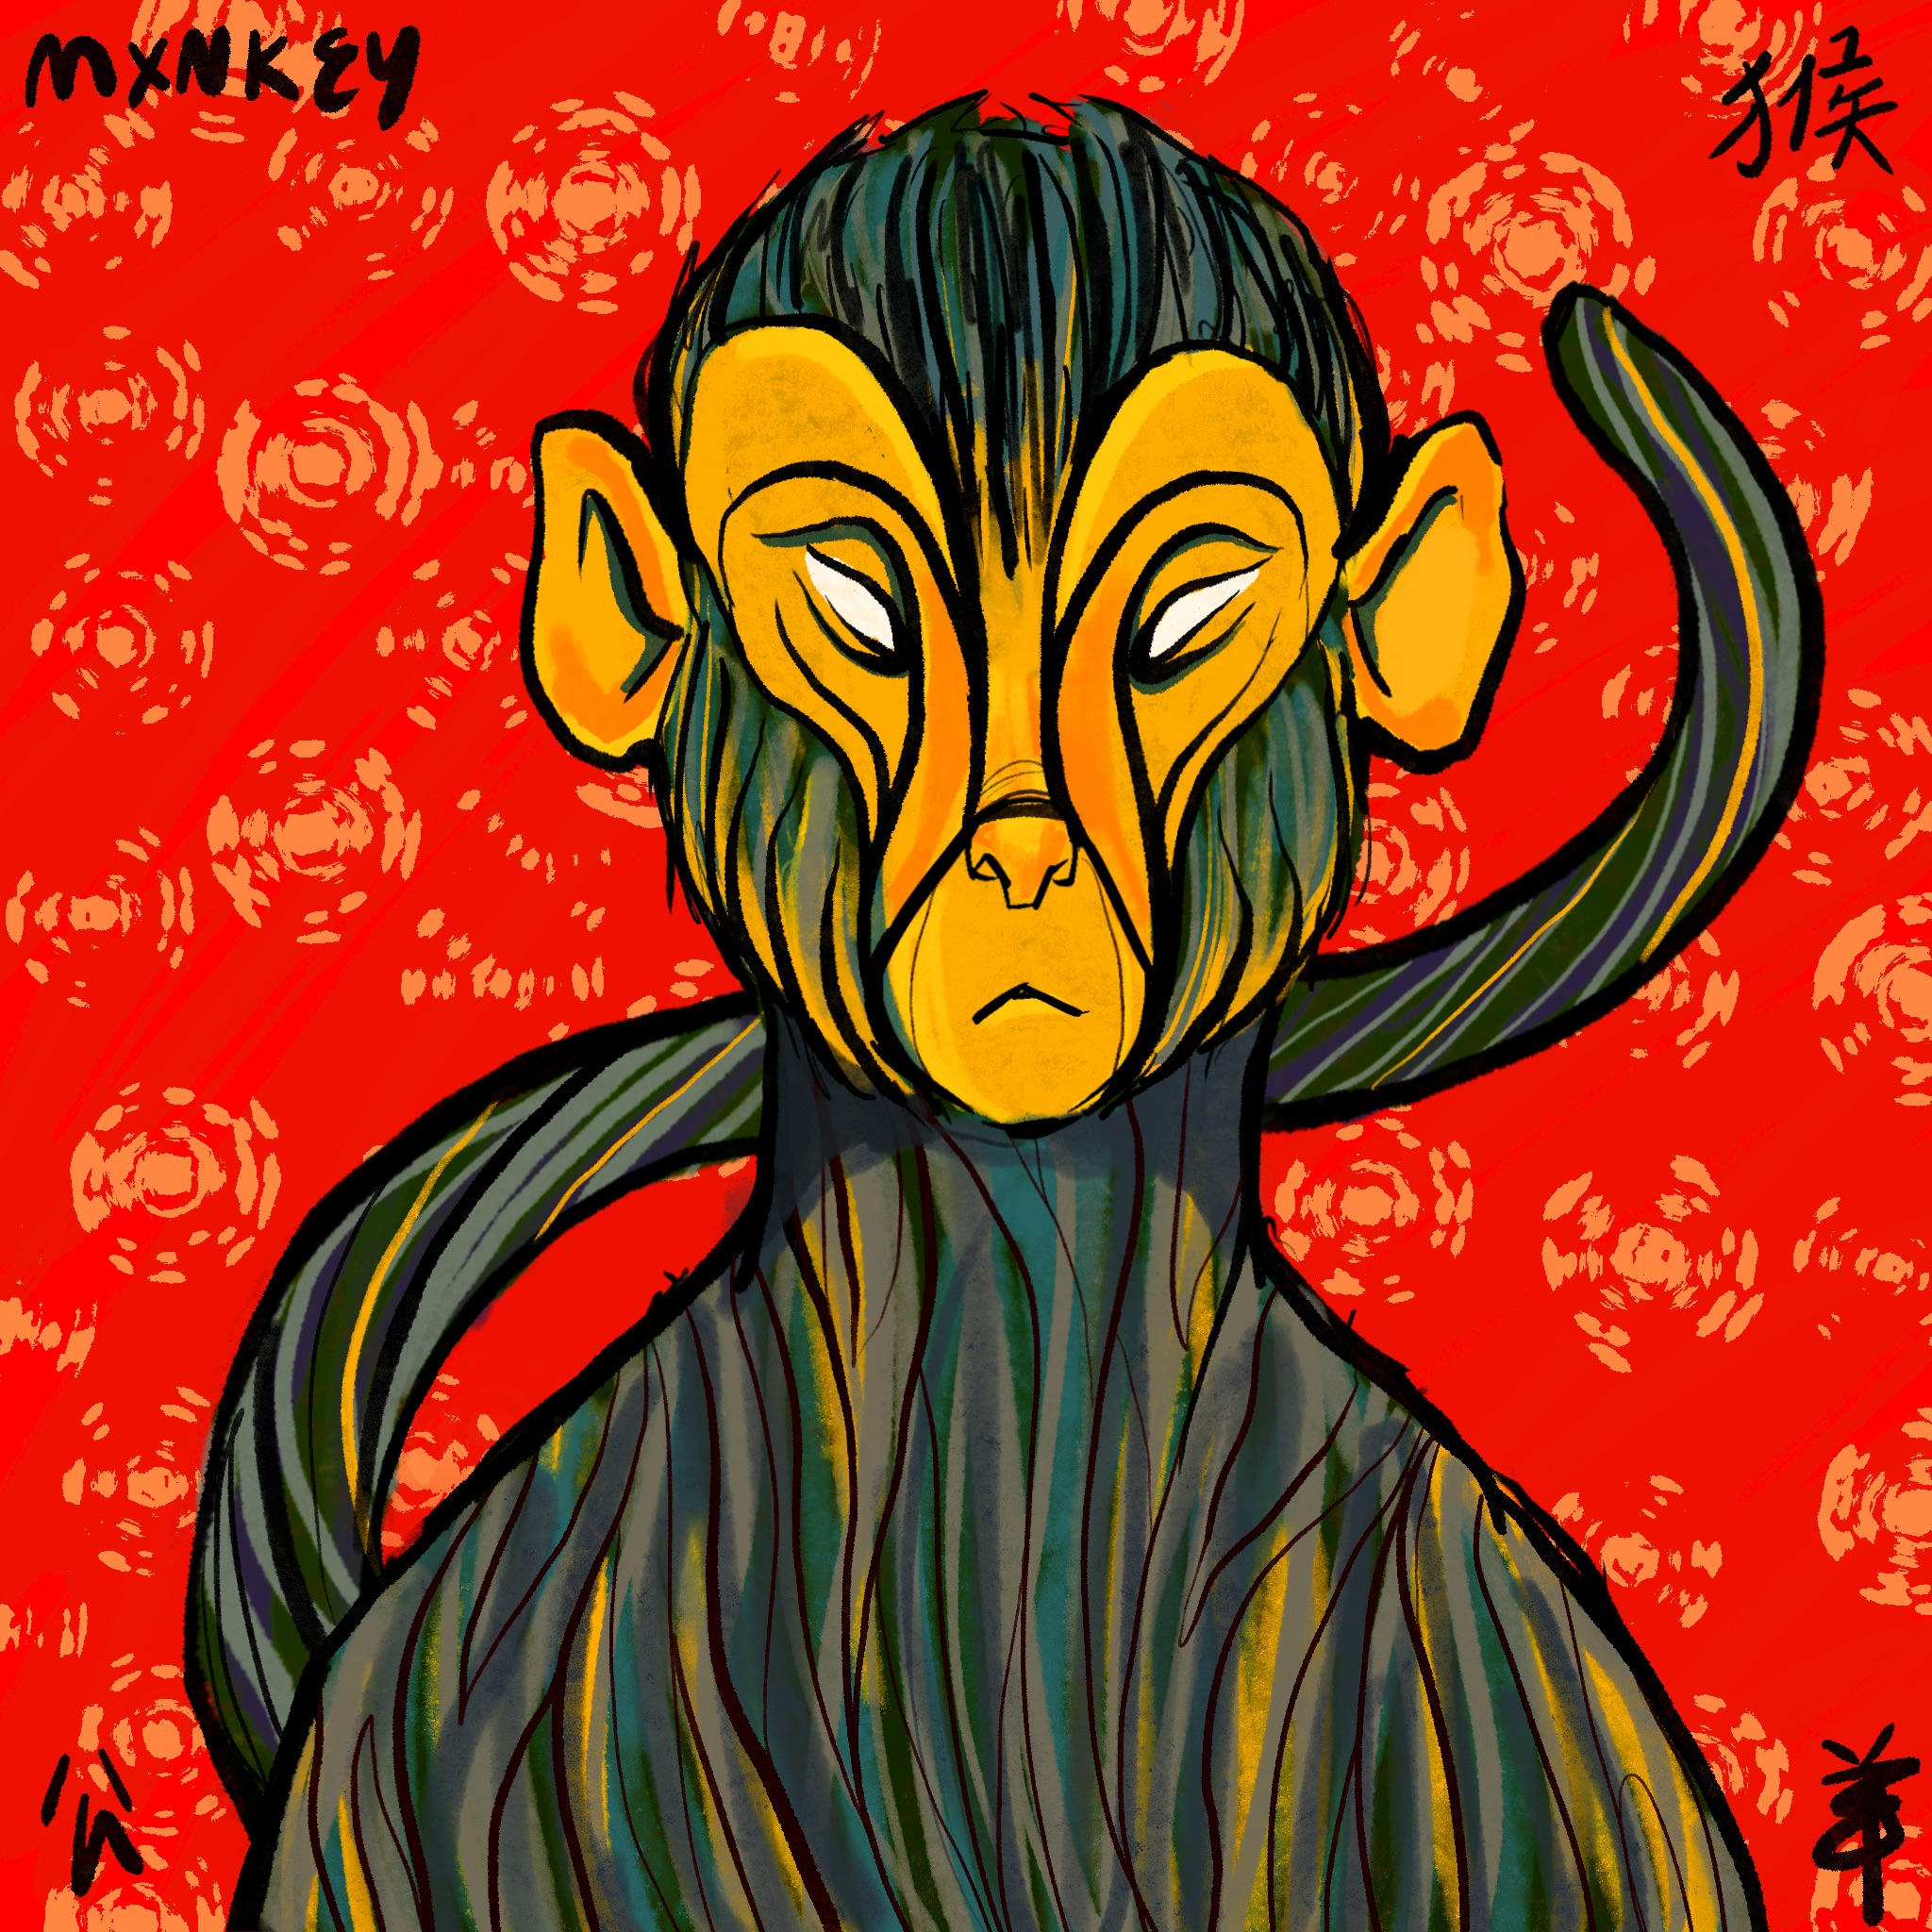 Lunar Zxdiac - Monkey